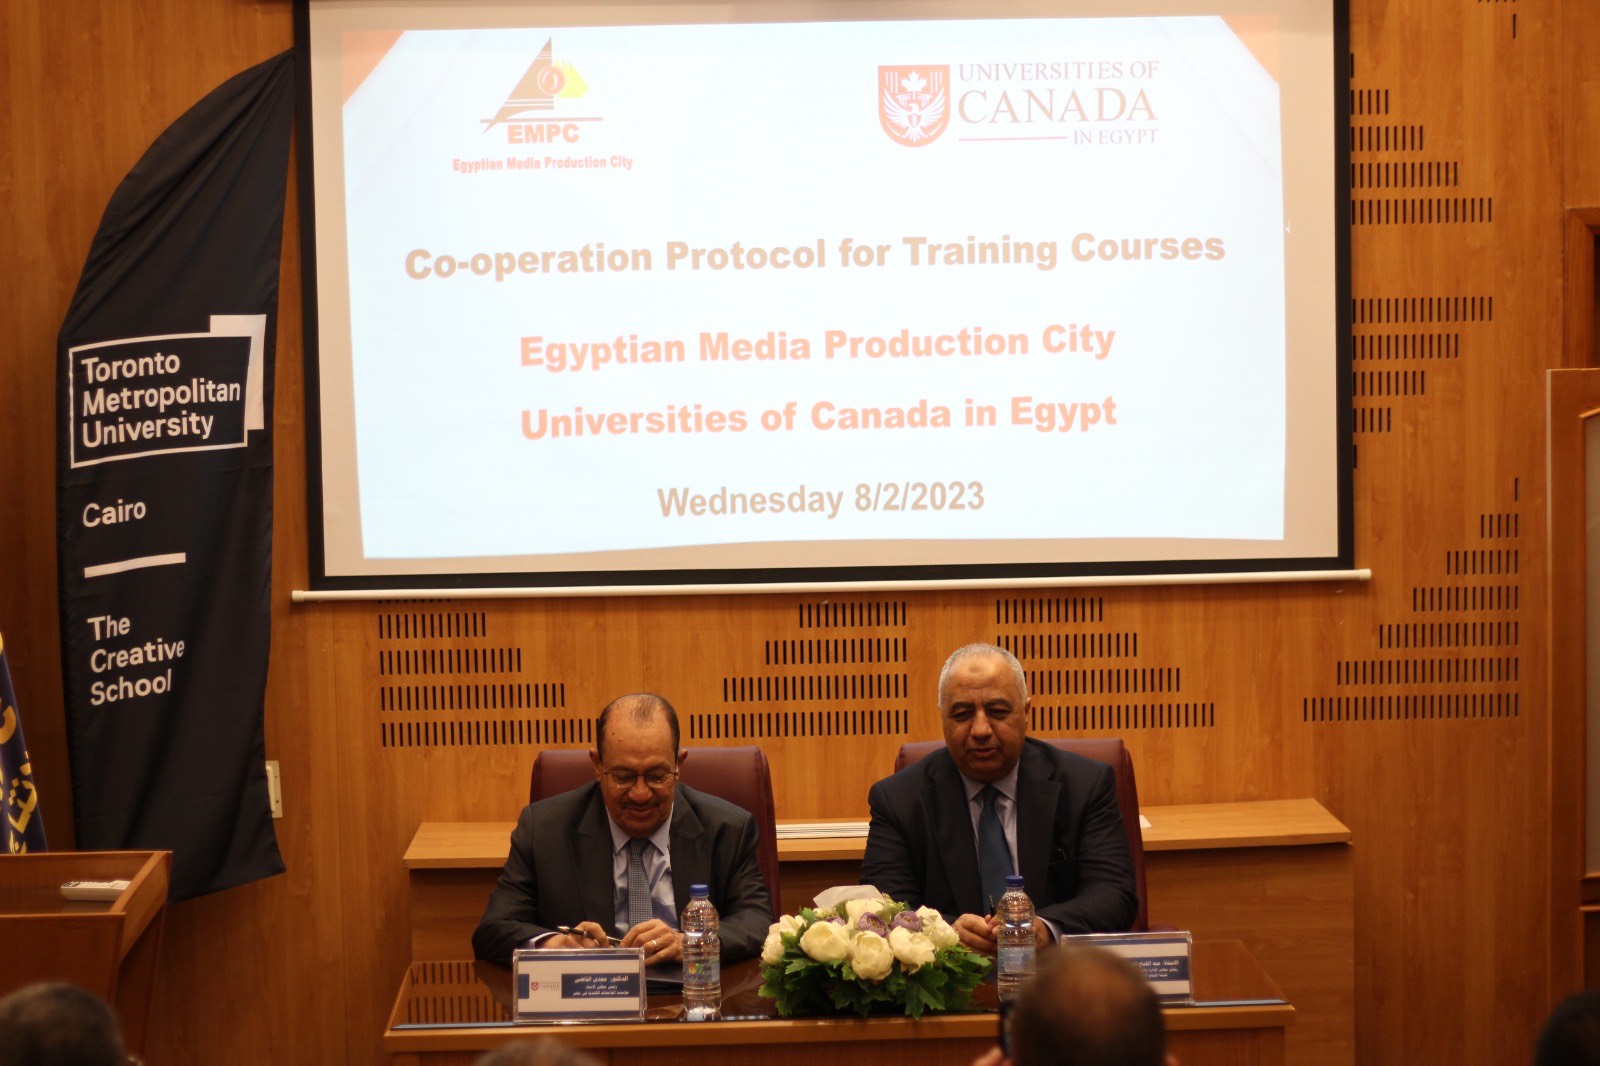 فرع جامعة تورونتو متروبوليتان بالقاهرة يعقد إتفاقية تعاون مع مدينة الإنتاج الإعلامي